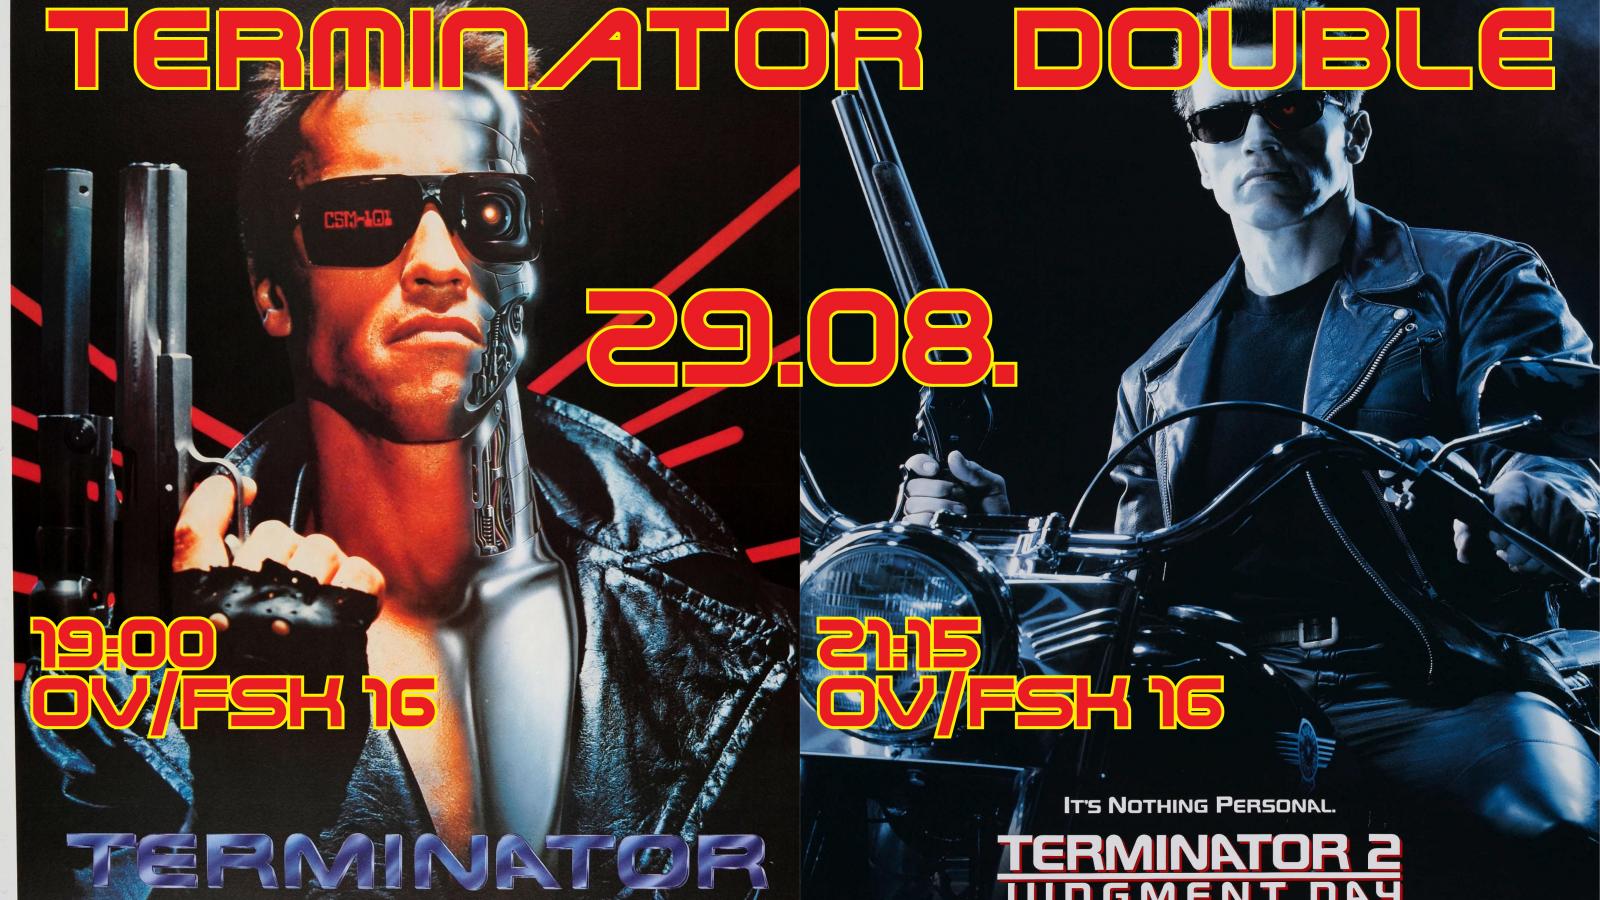 Terminator Double